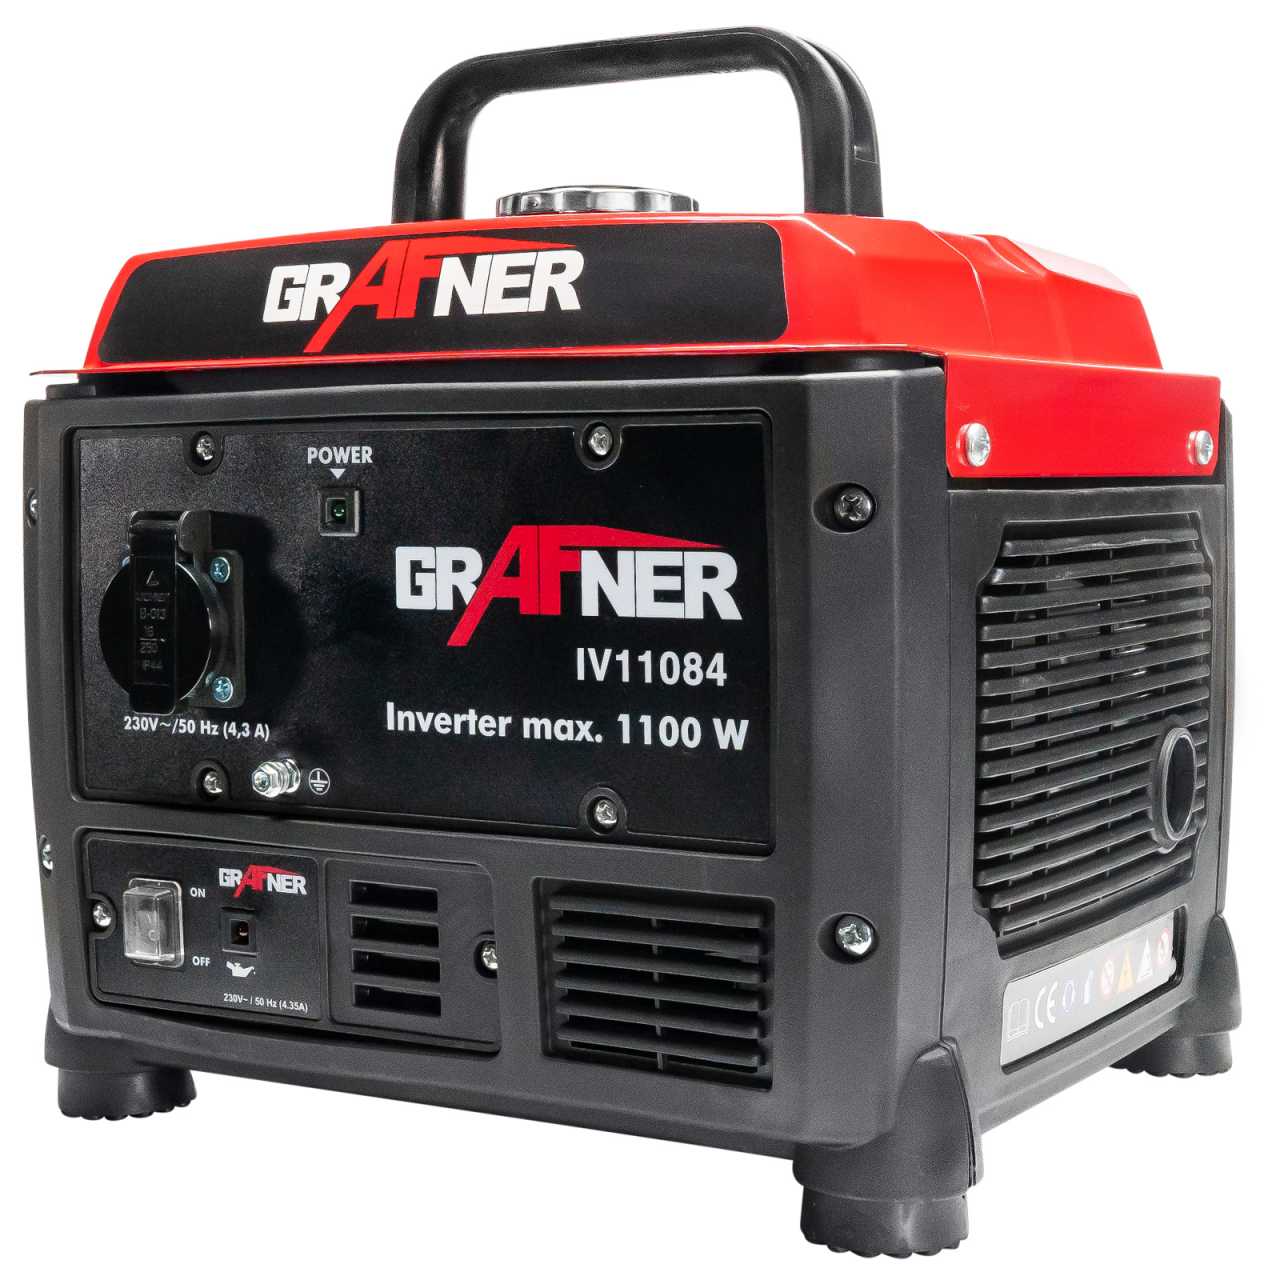 Grafner Inverter Stromerzeuger IV11084